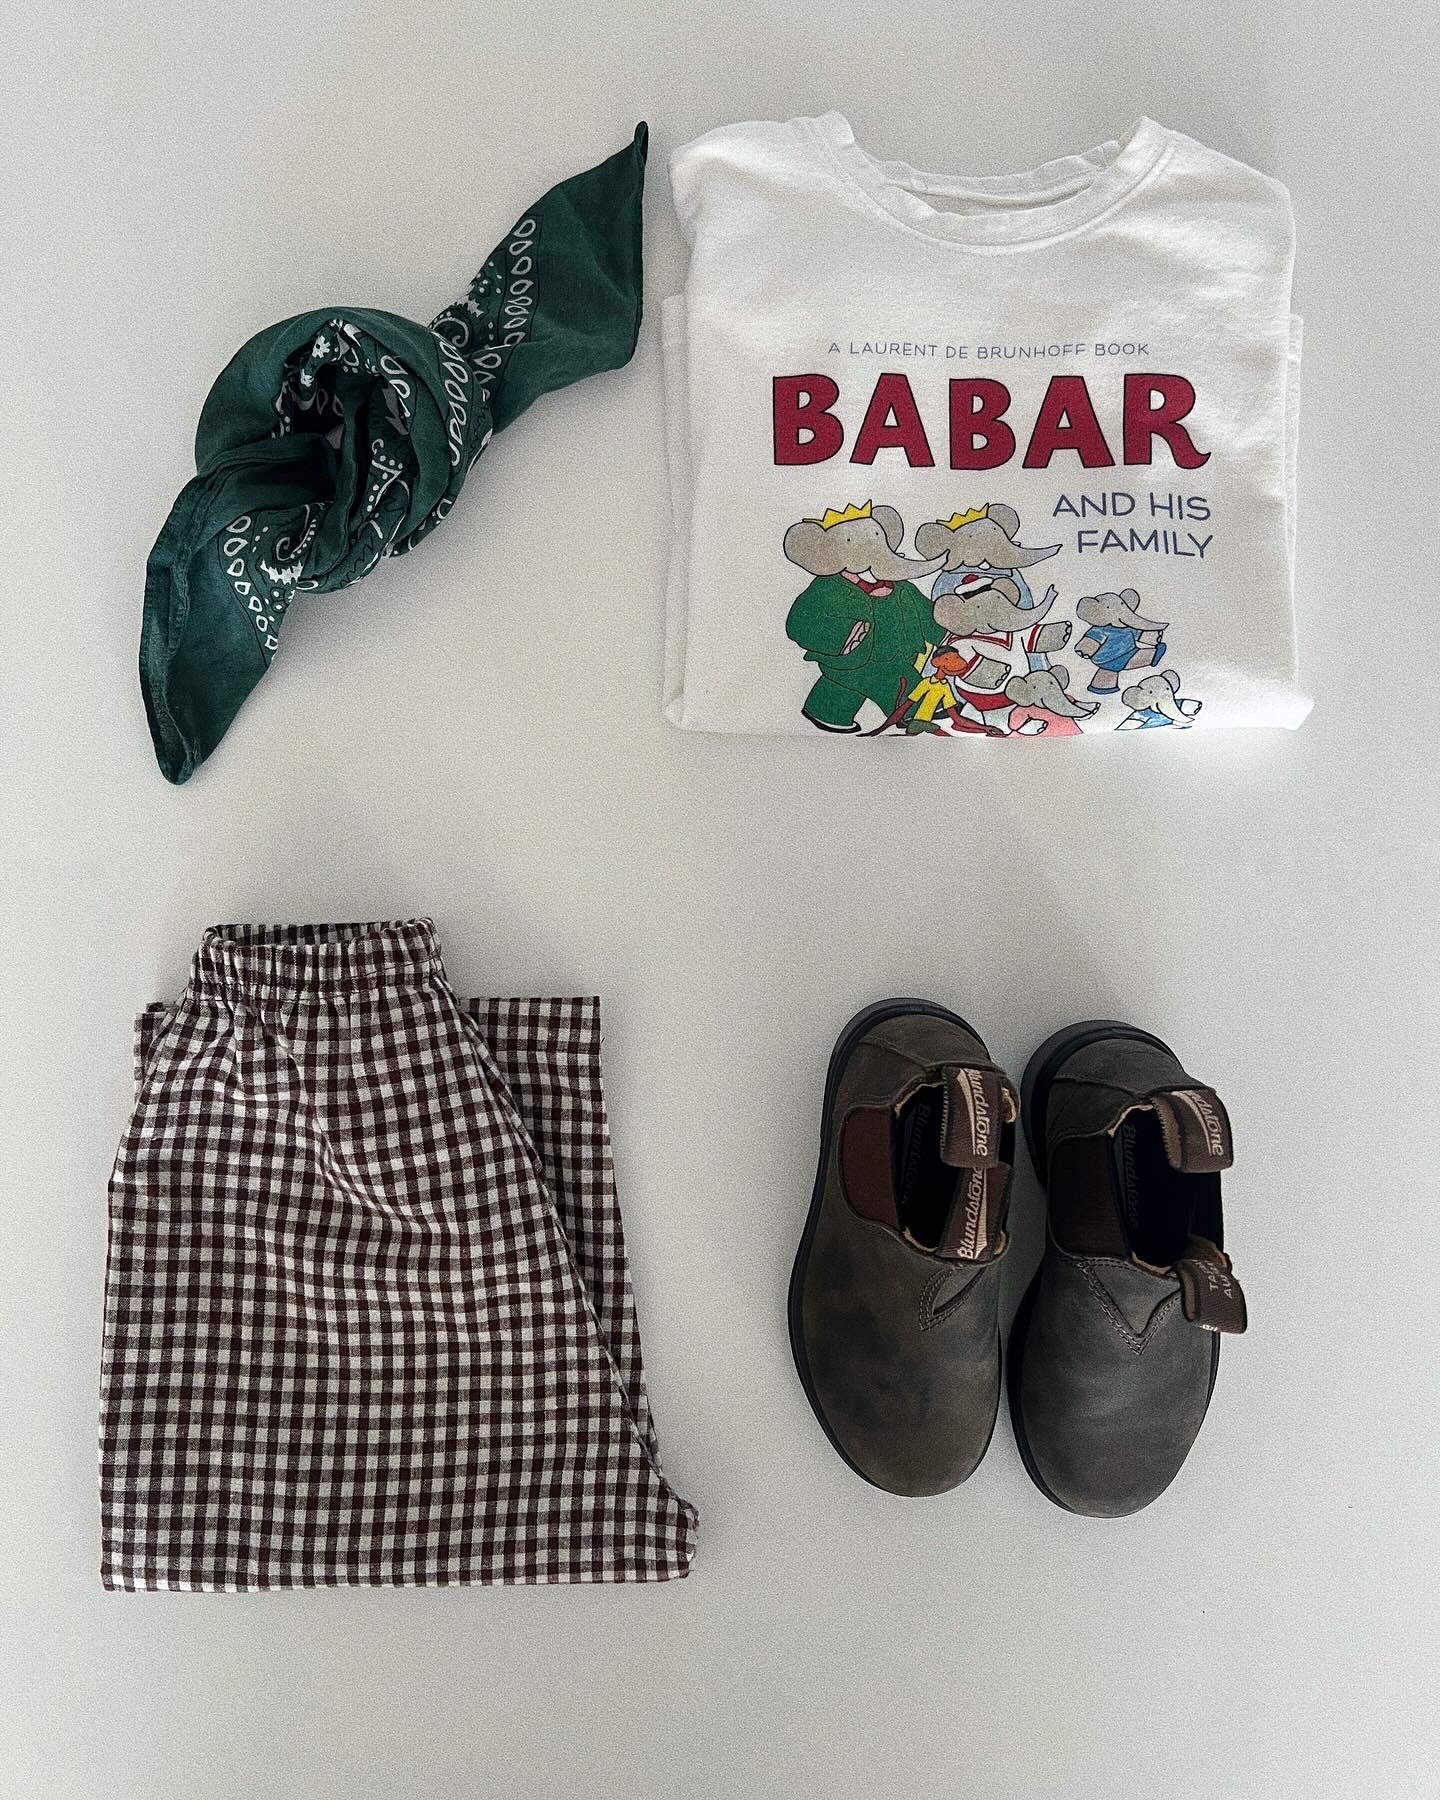 Babar-T-Shirt